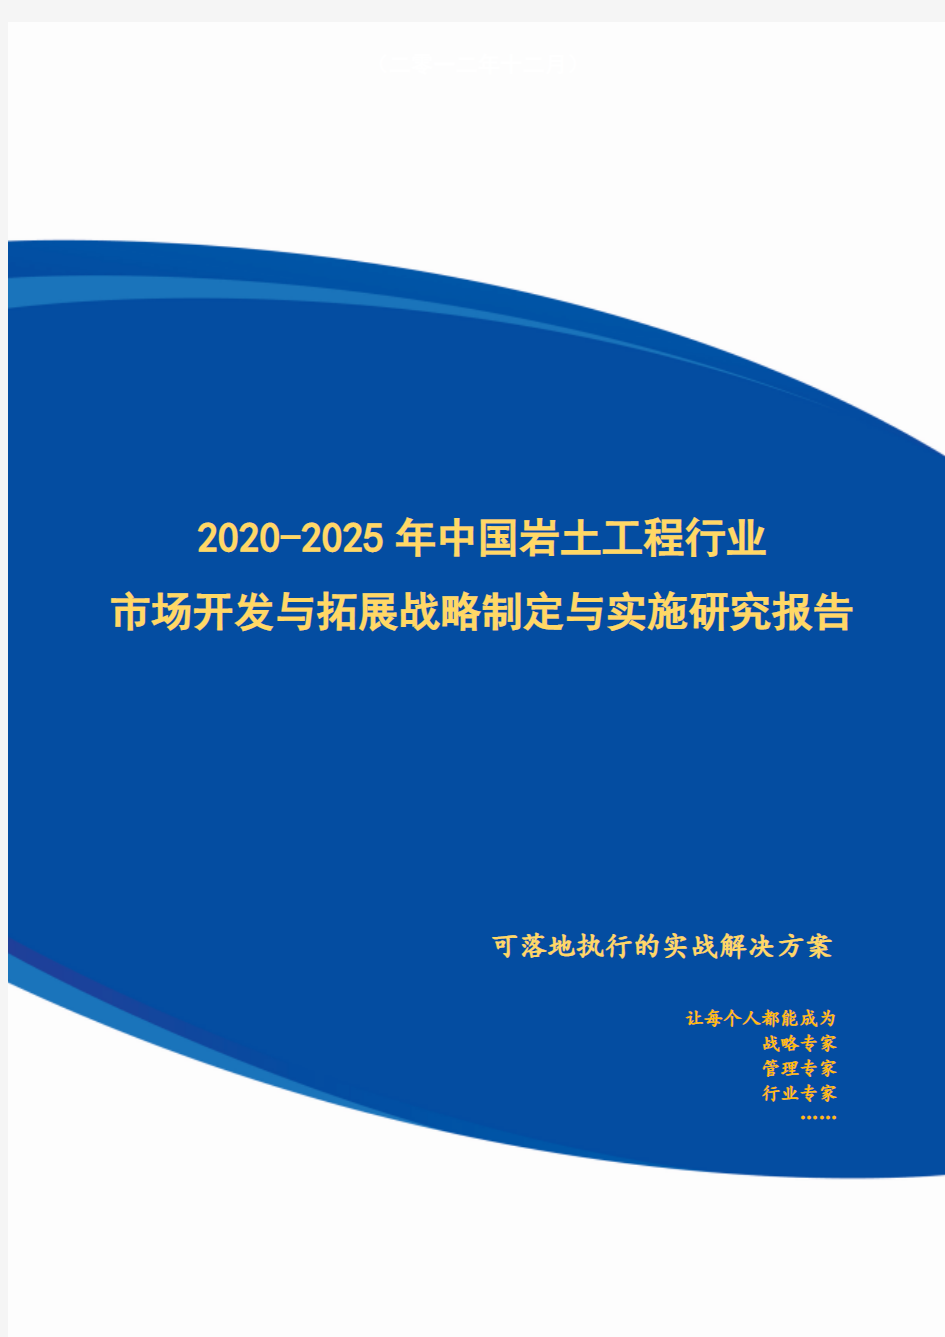 2020-2025年中国岩土工程行业市场开发与拓展战略制定与实施研究报告